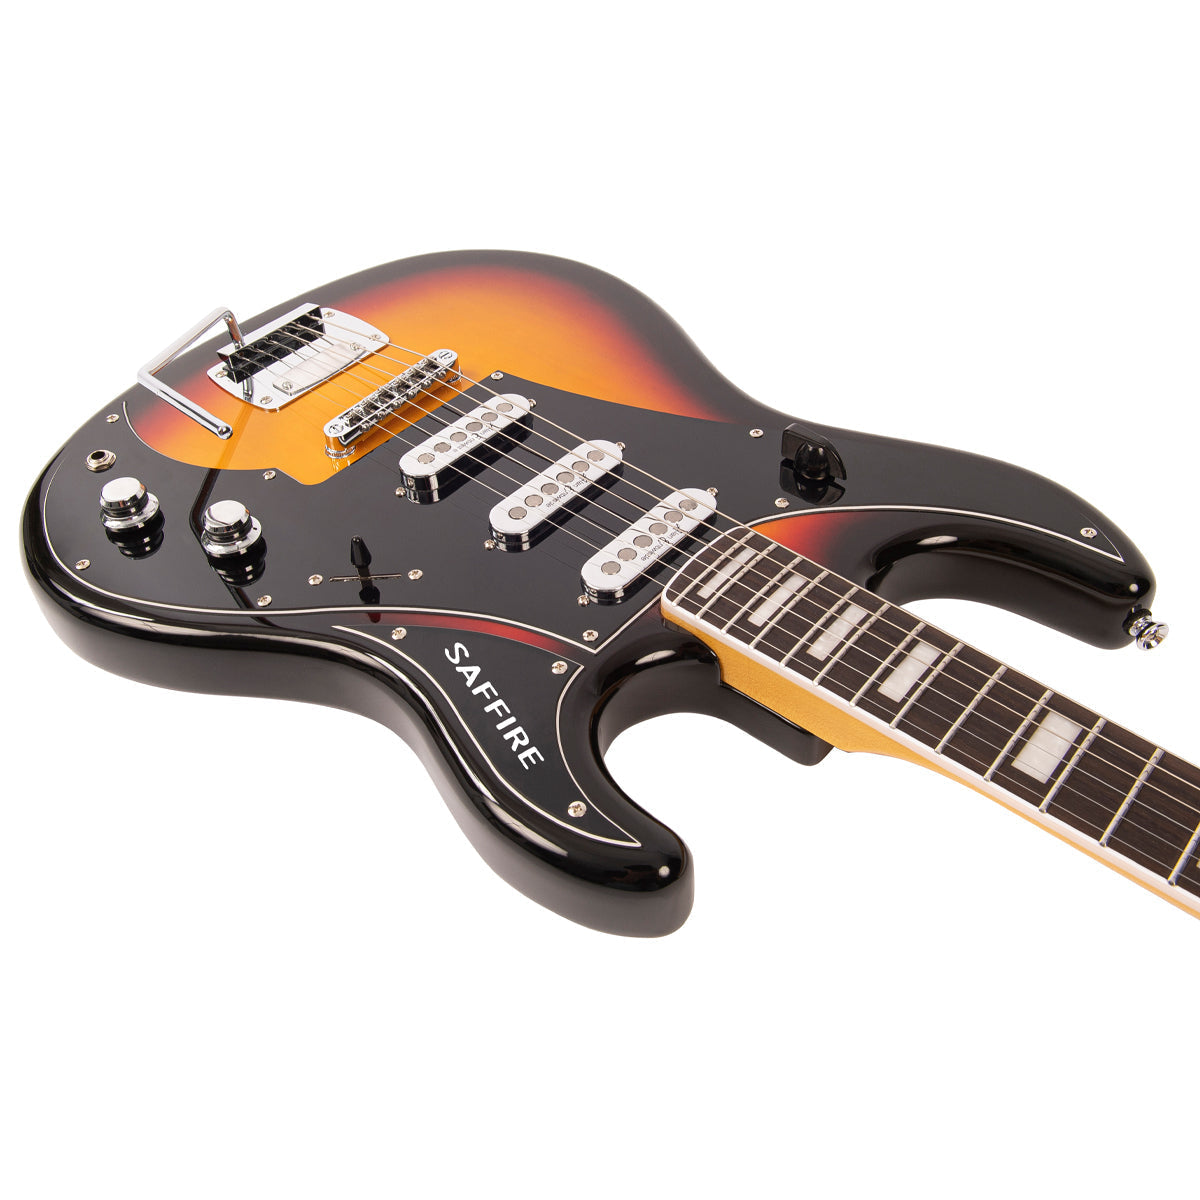 Rapier Saffire Electric Guitar ~ Sunburst, Electric Guitar for sale at Richards Guitars.